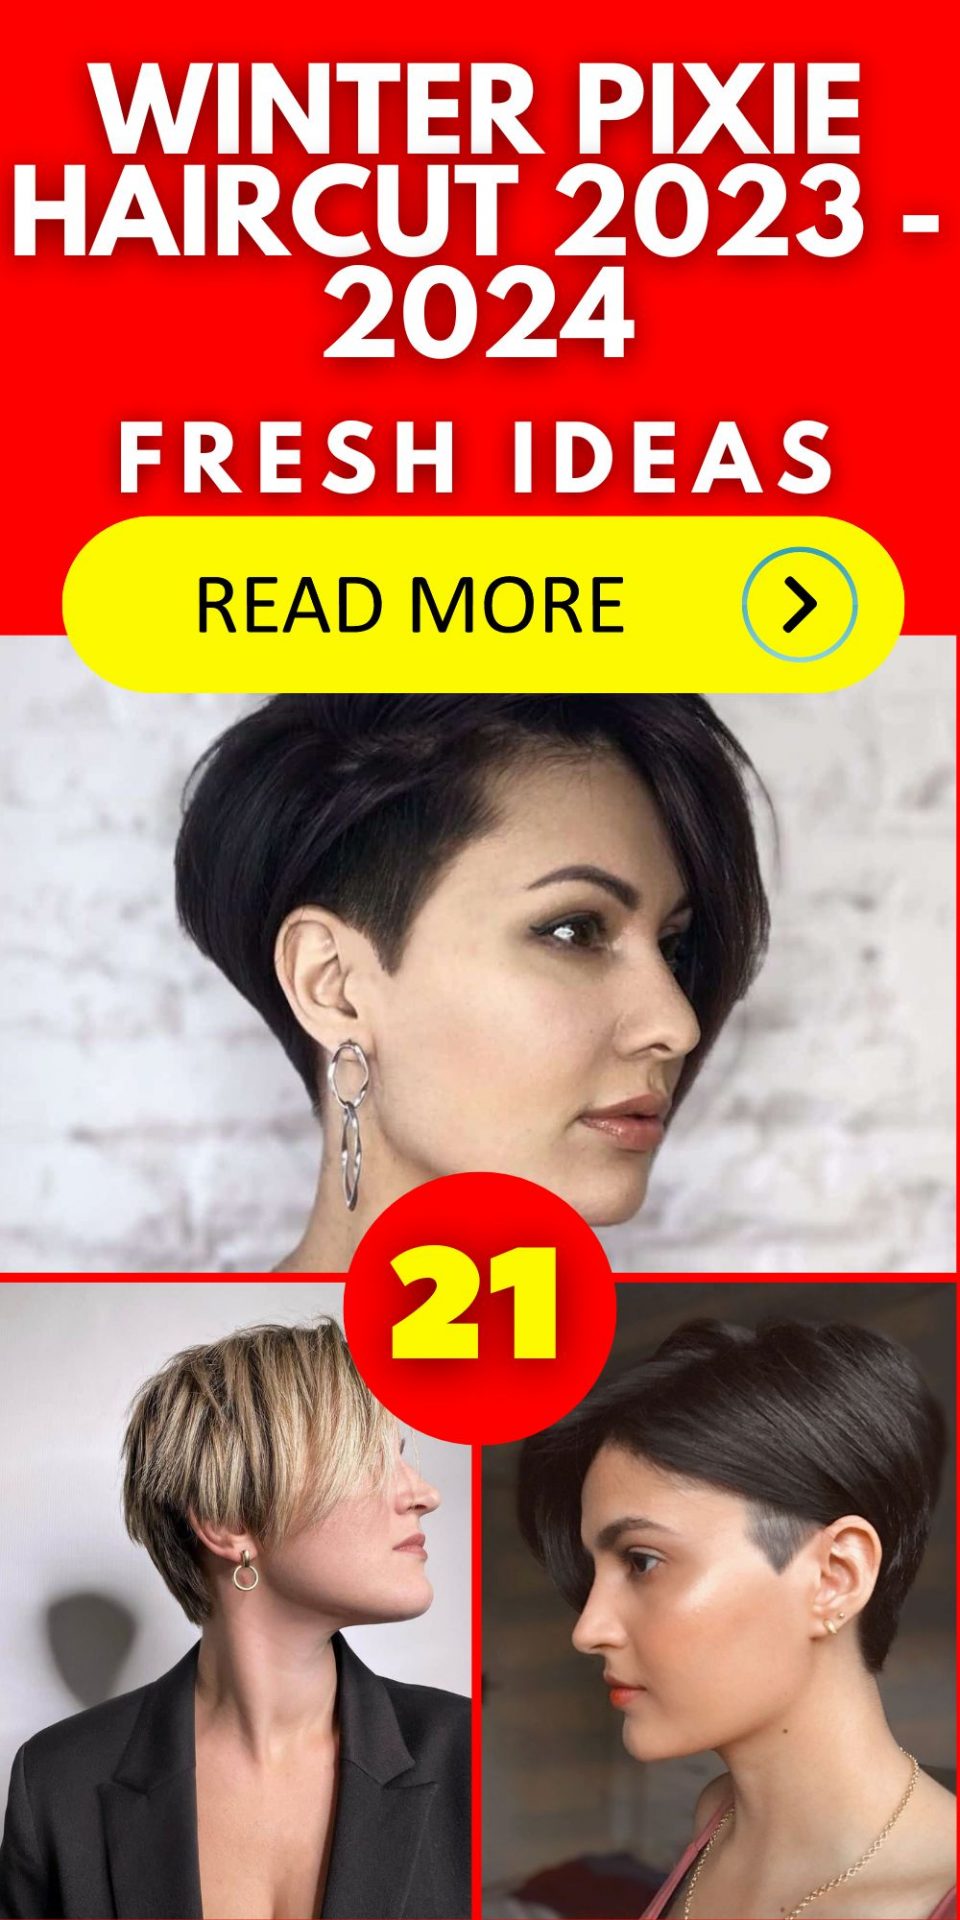 Winter Pixie Haircut 2023 - 2024 21 Ideas - women-club.online